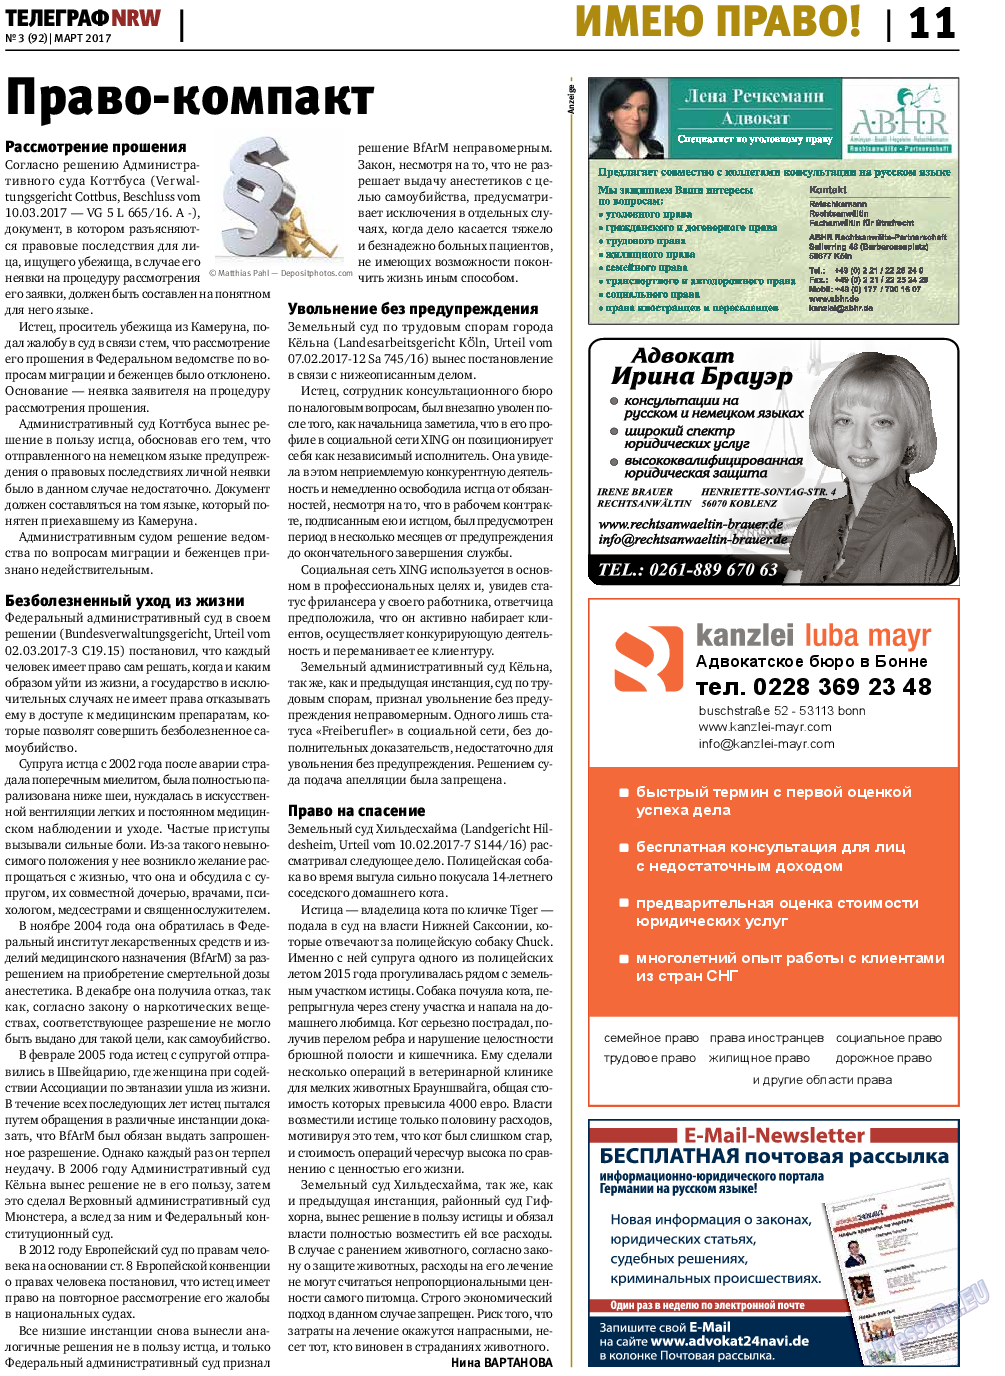 Телеграф NRW (газета). 2017 год, номер 3, стр. 11